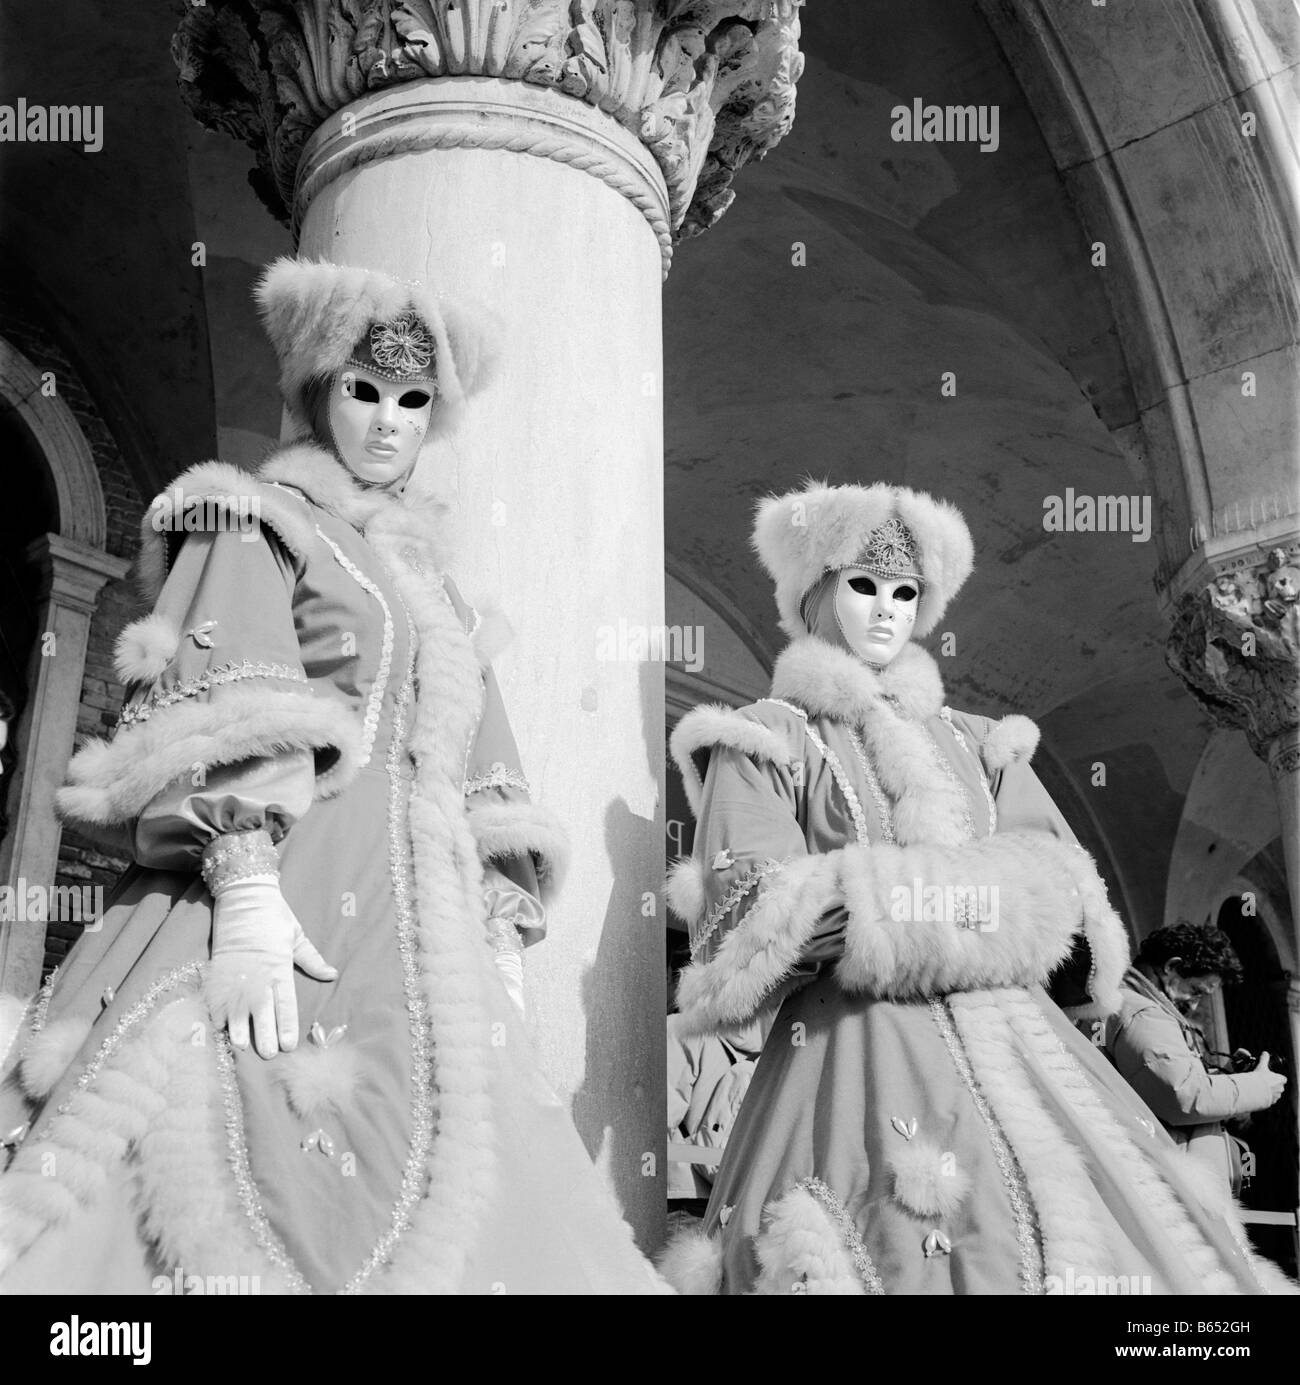 Le Furry et blanc masques à Venise pendant le carnaval Banque D'Images